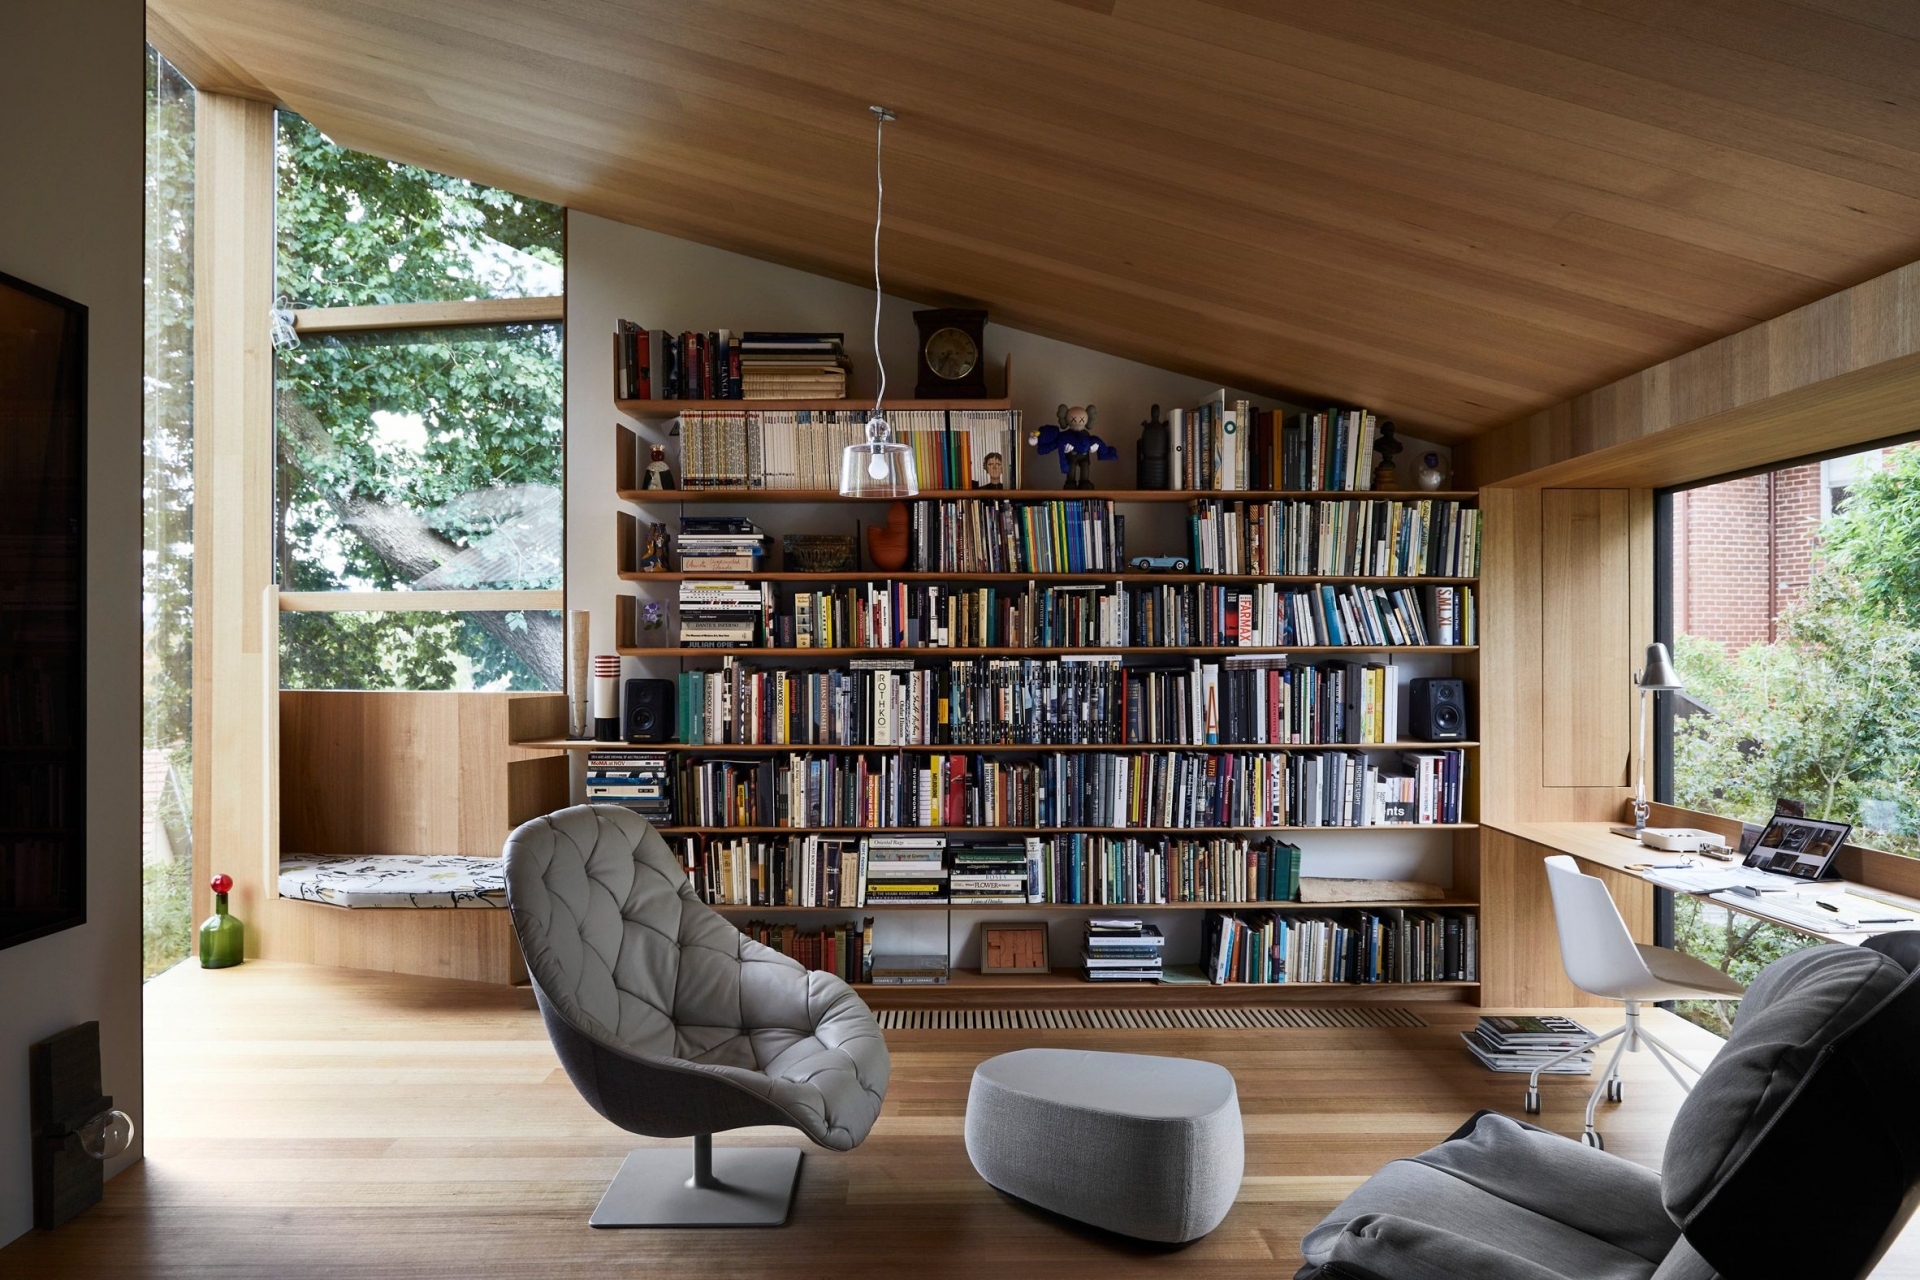 Ngôi nhà của KTS John Wardle ở Melbourne (Úc) có một không gian thư viện ấm cúng, nơi trưng bày bộ sưu tập sách của cả gia đình. Giá sách bằng gỗ phù hợp với sàn nhà và góc đọc sách, nơi có tầm nhìn thư thái ra cửa sổ kính suốt từ trần đến sàn.